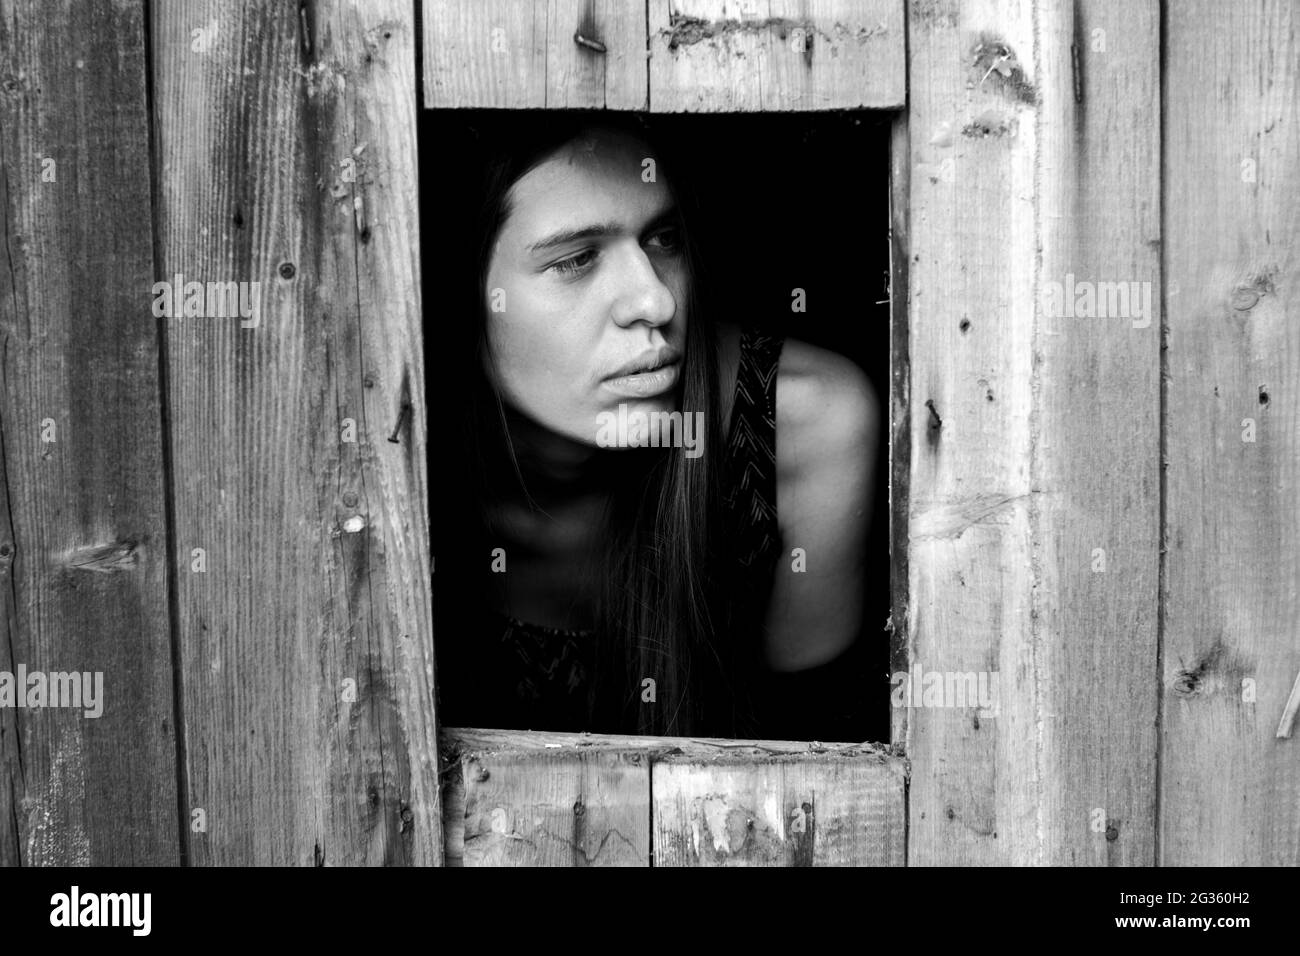 Une jeune femme dans une petite fenêtre. Photo en noir et blanc. Banque D'Images